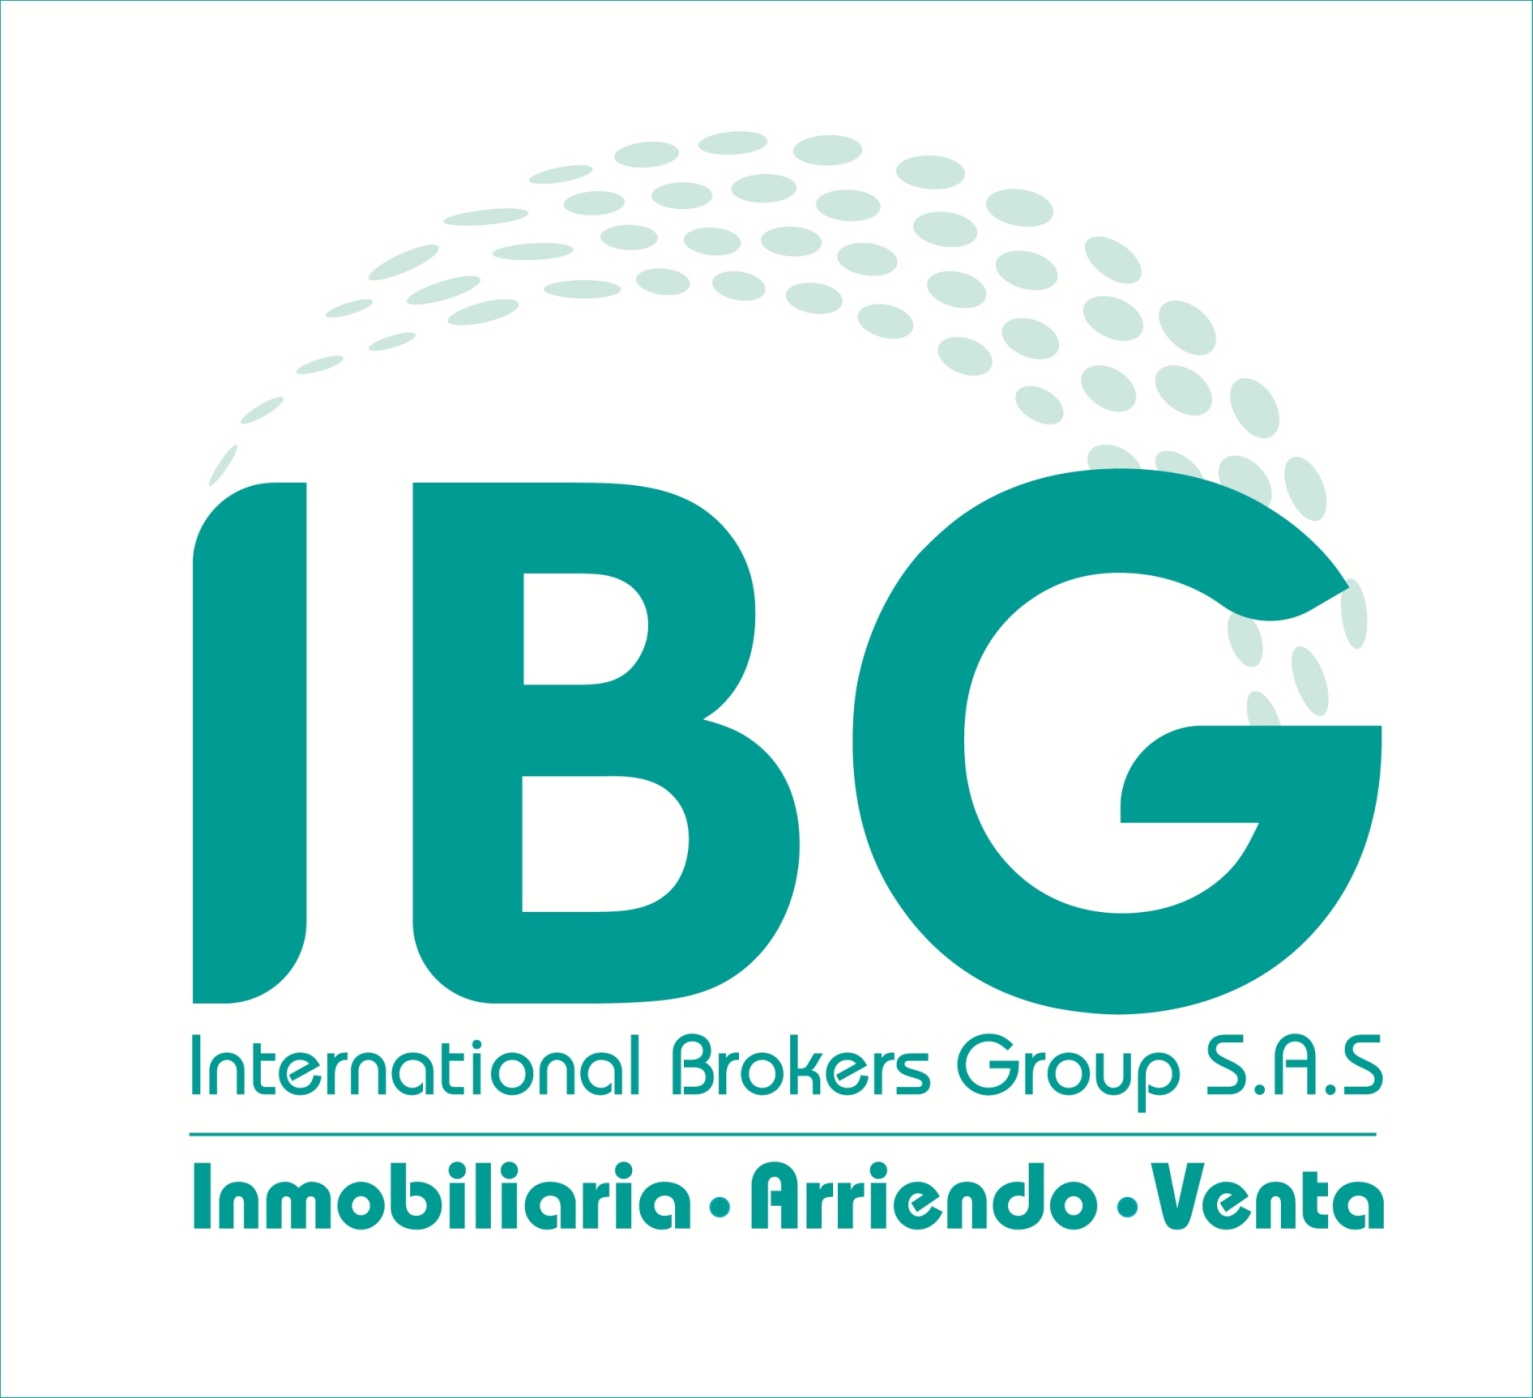 International Brokers Group